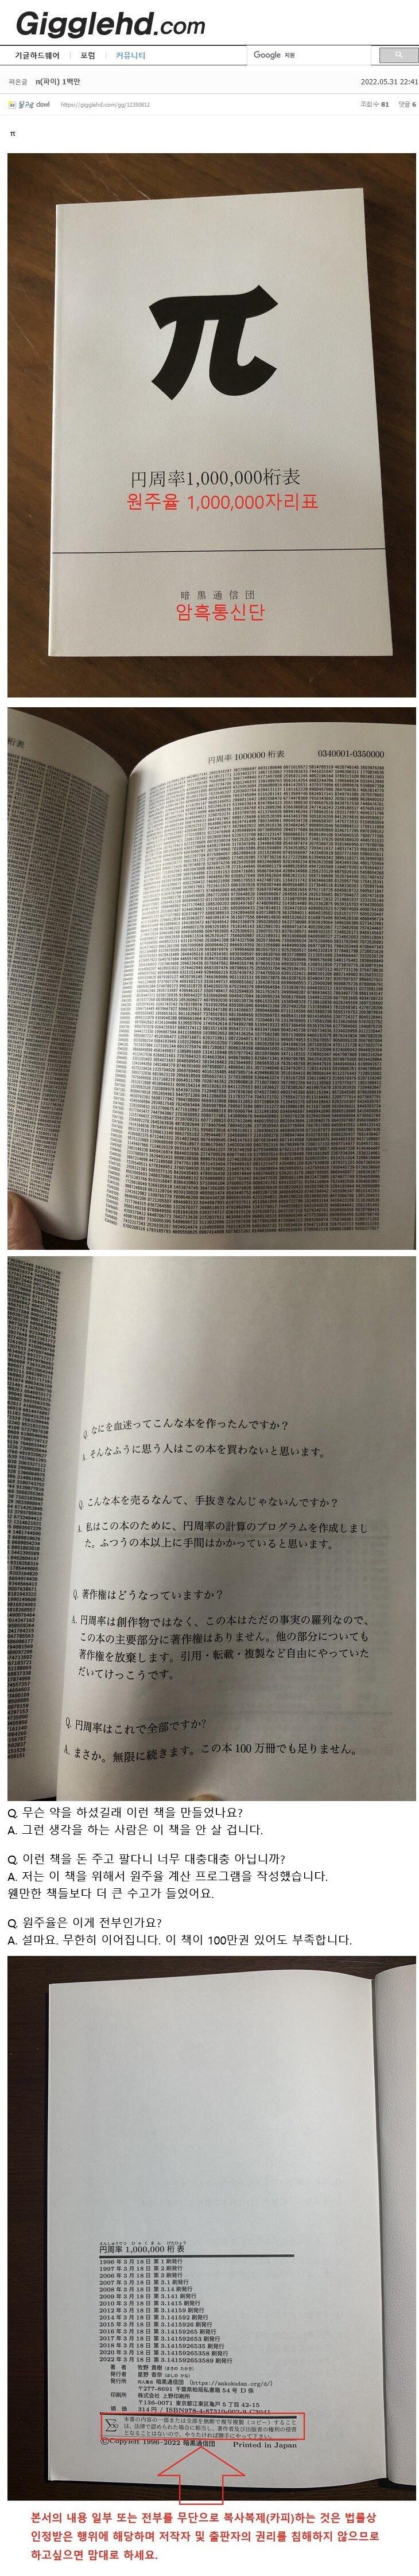 일본에서 1996년부터 출판 중인 광기의 수학책.png.jpg